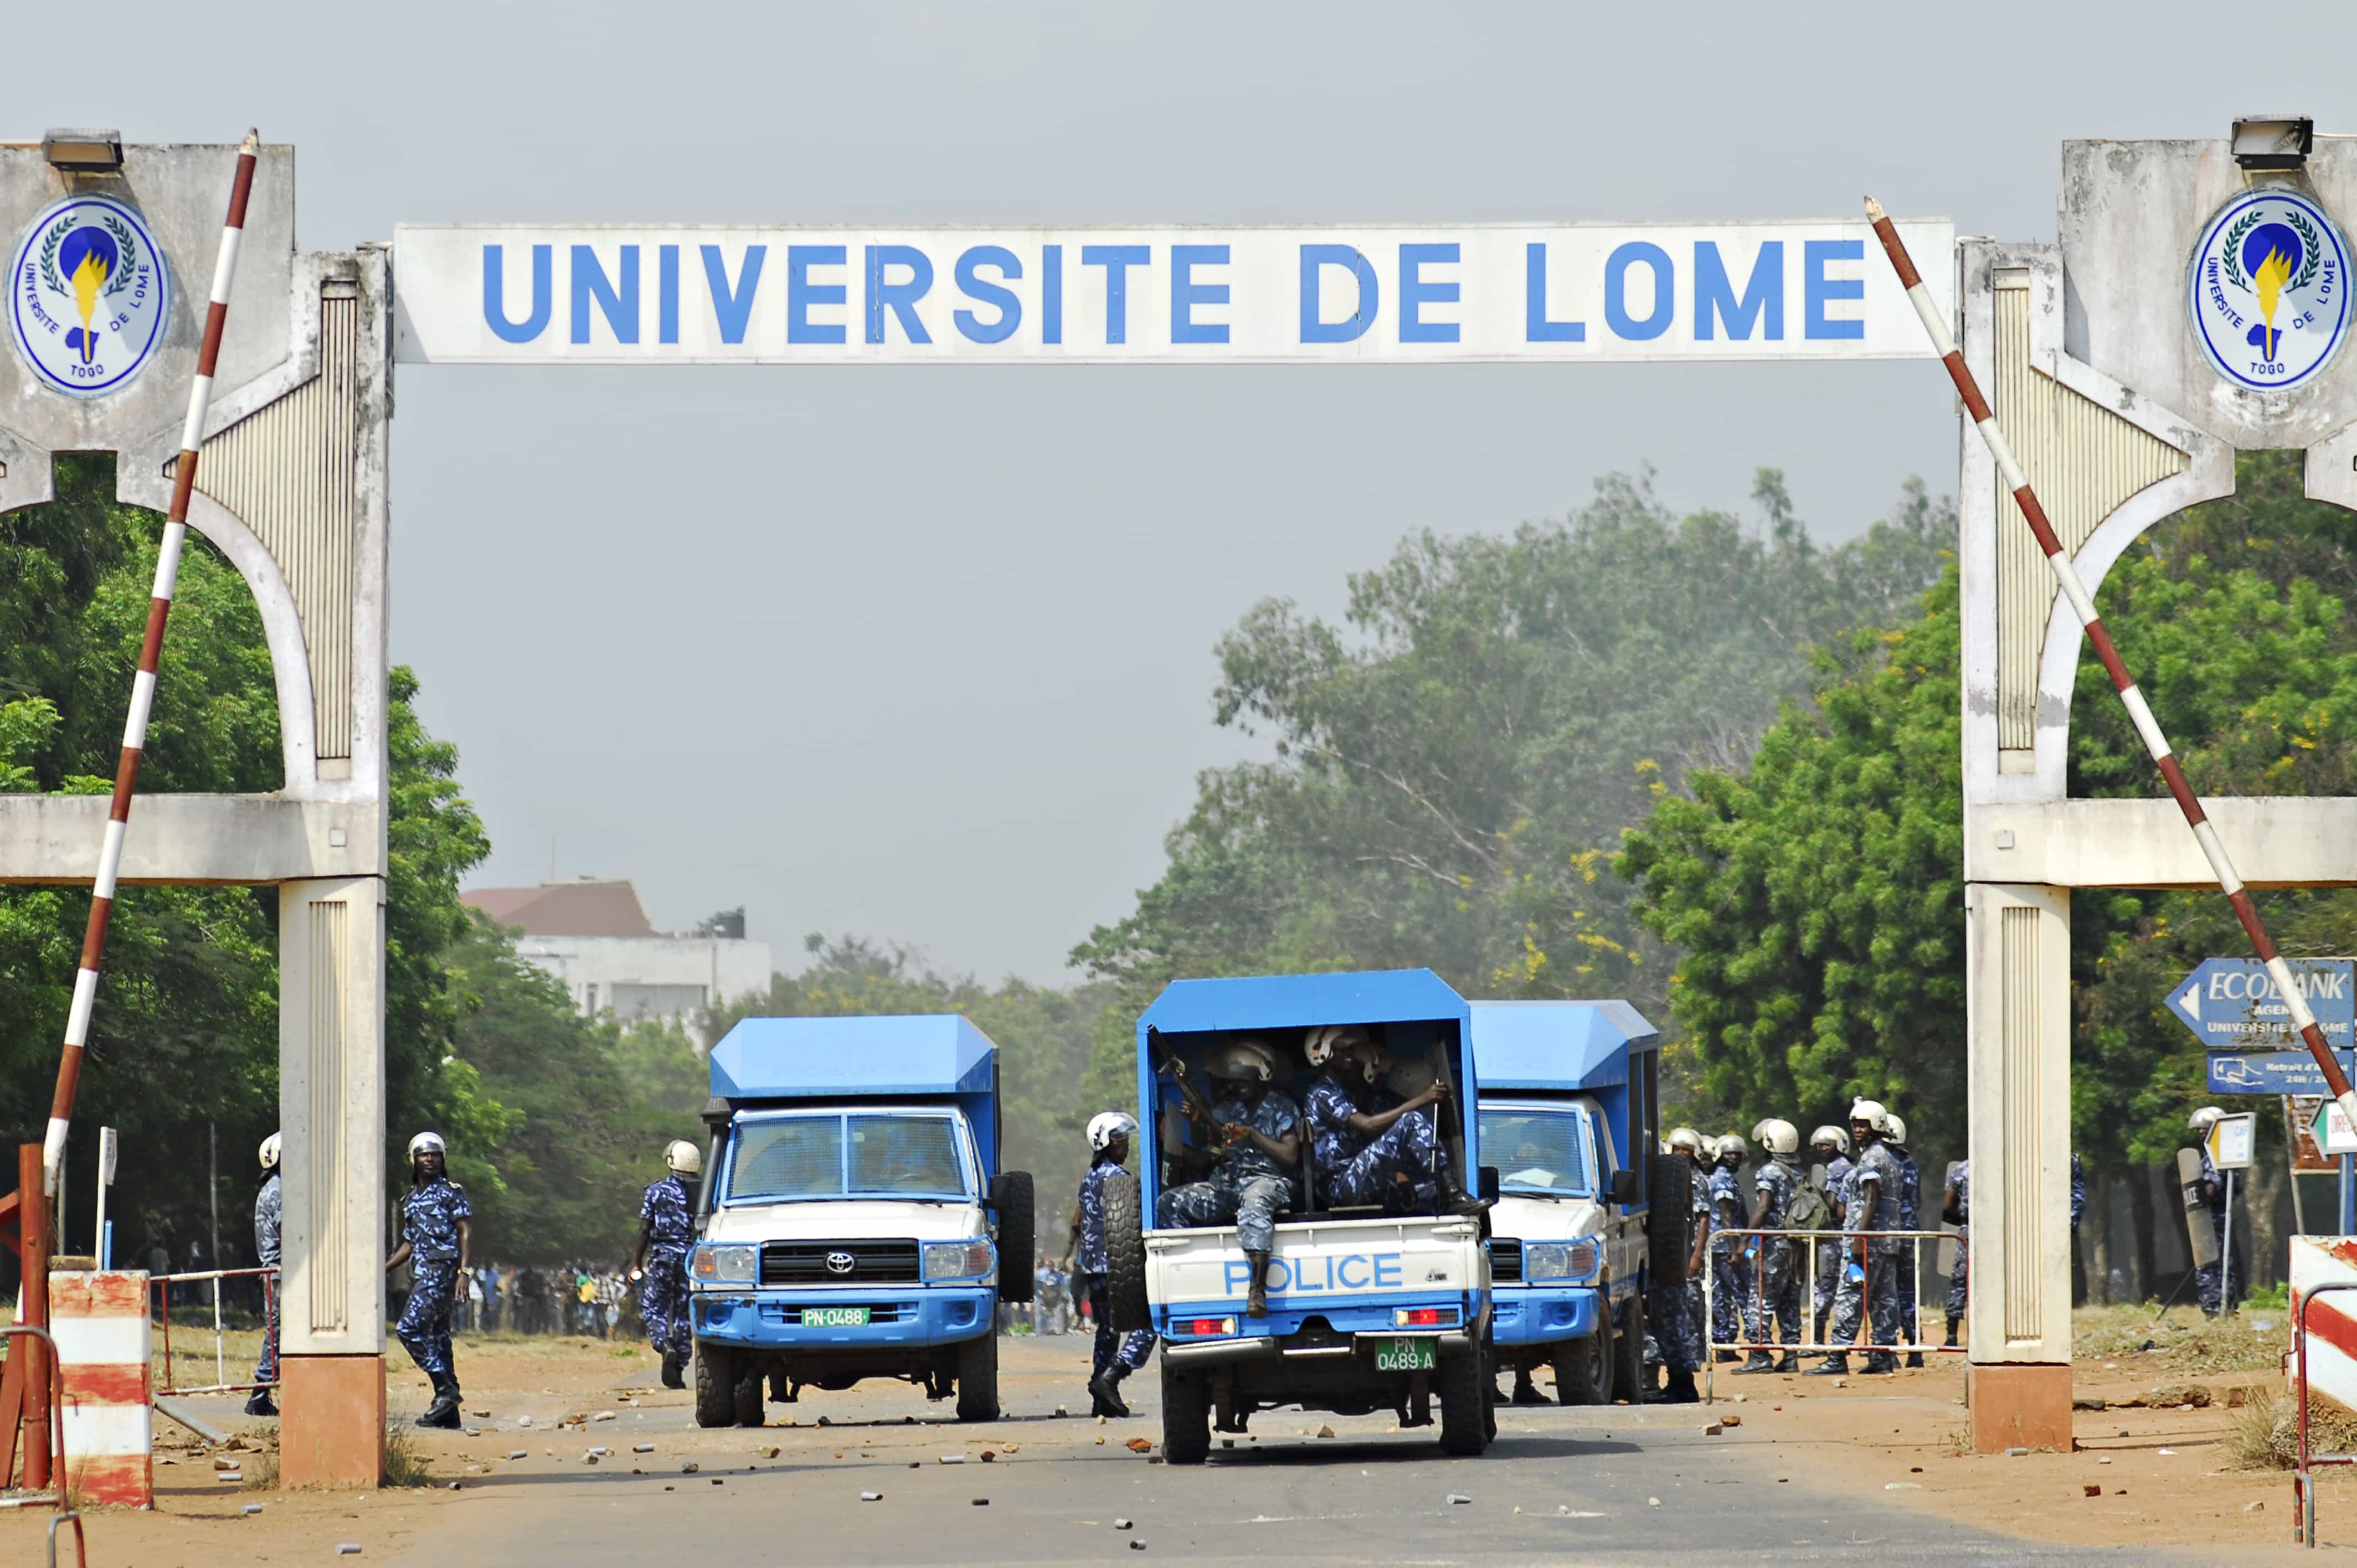 Police arrive at a demonstration at the University of Lomé on 8 December 2011., Daniel Hayduk/Demotix